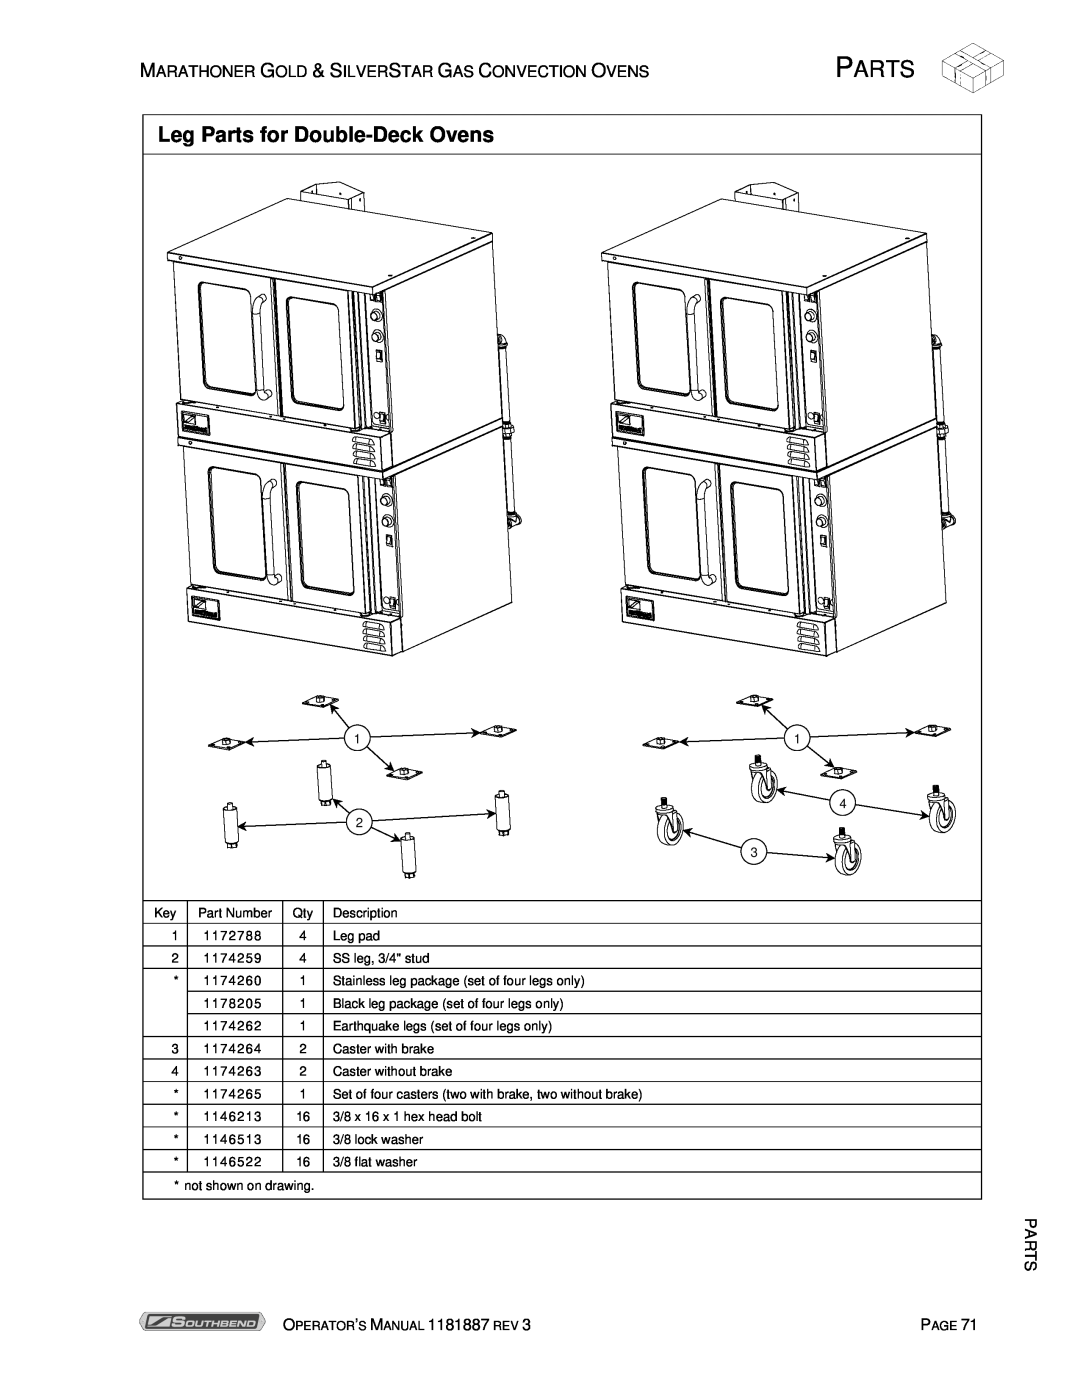 Southbend Marathoner manual Leg Parts for Double-Deck Ovens 